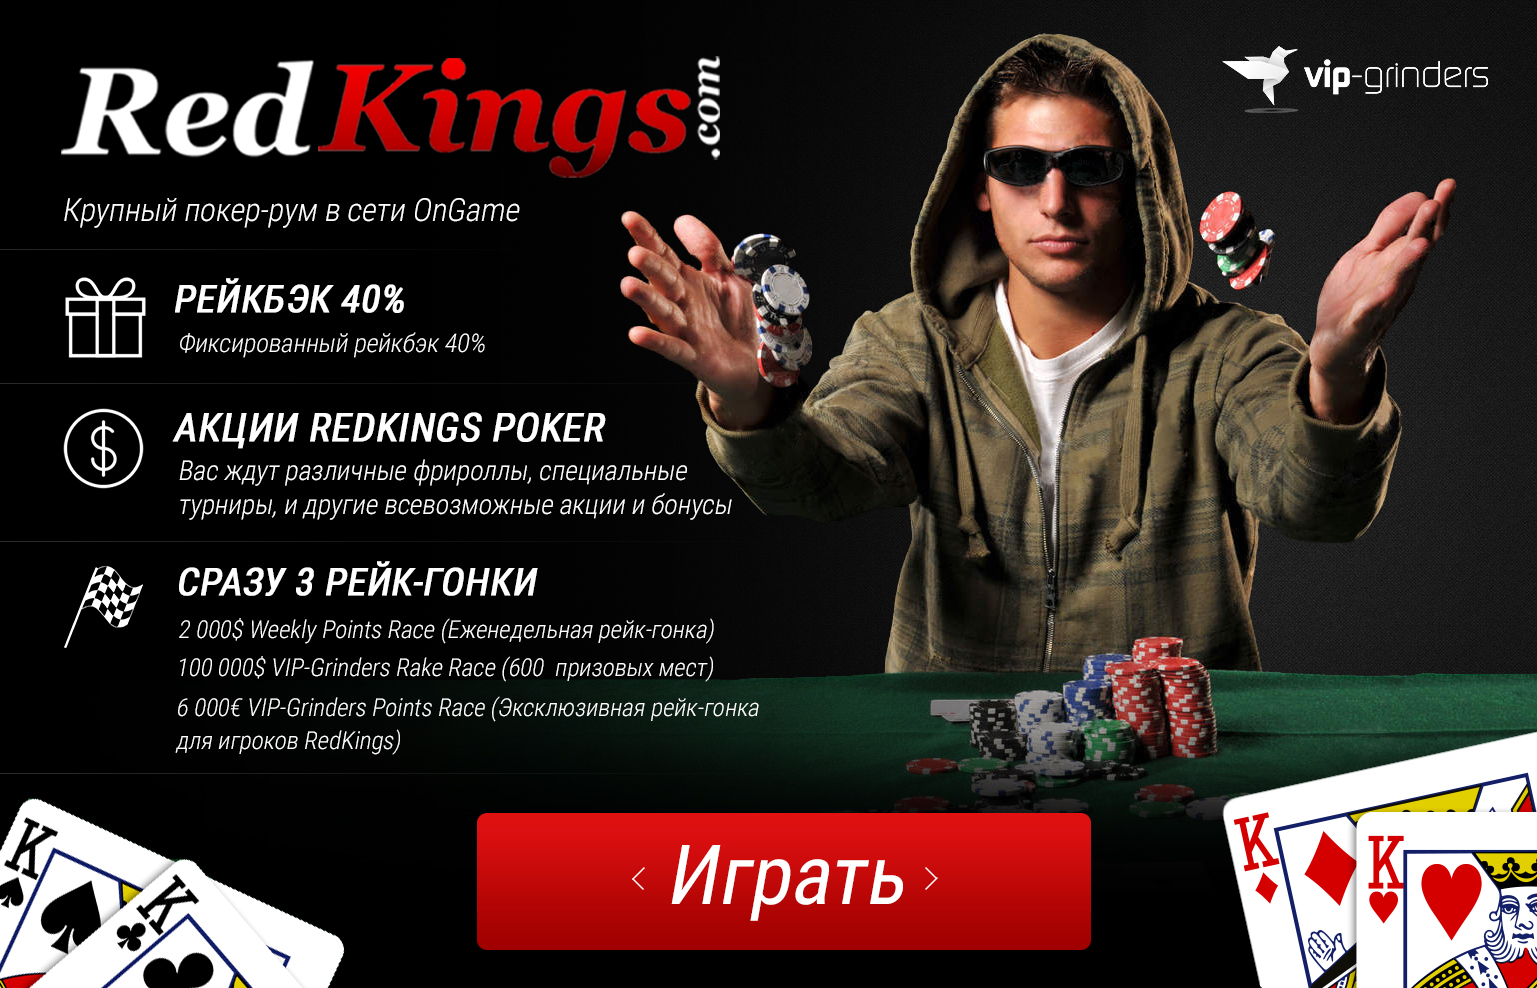 RedKings Poker — история покер-рума сети Microgaming